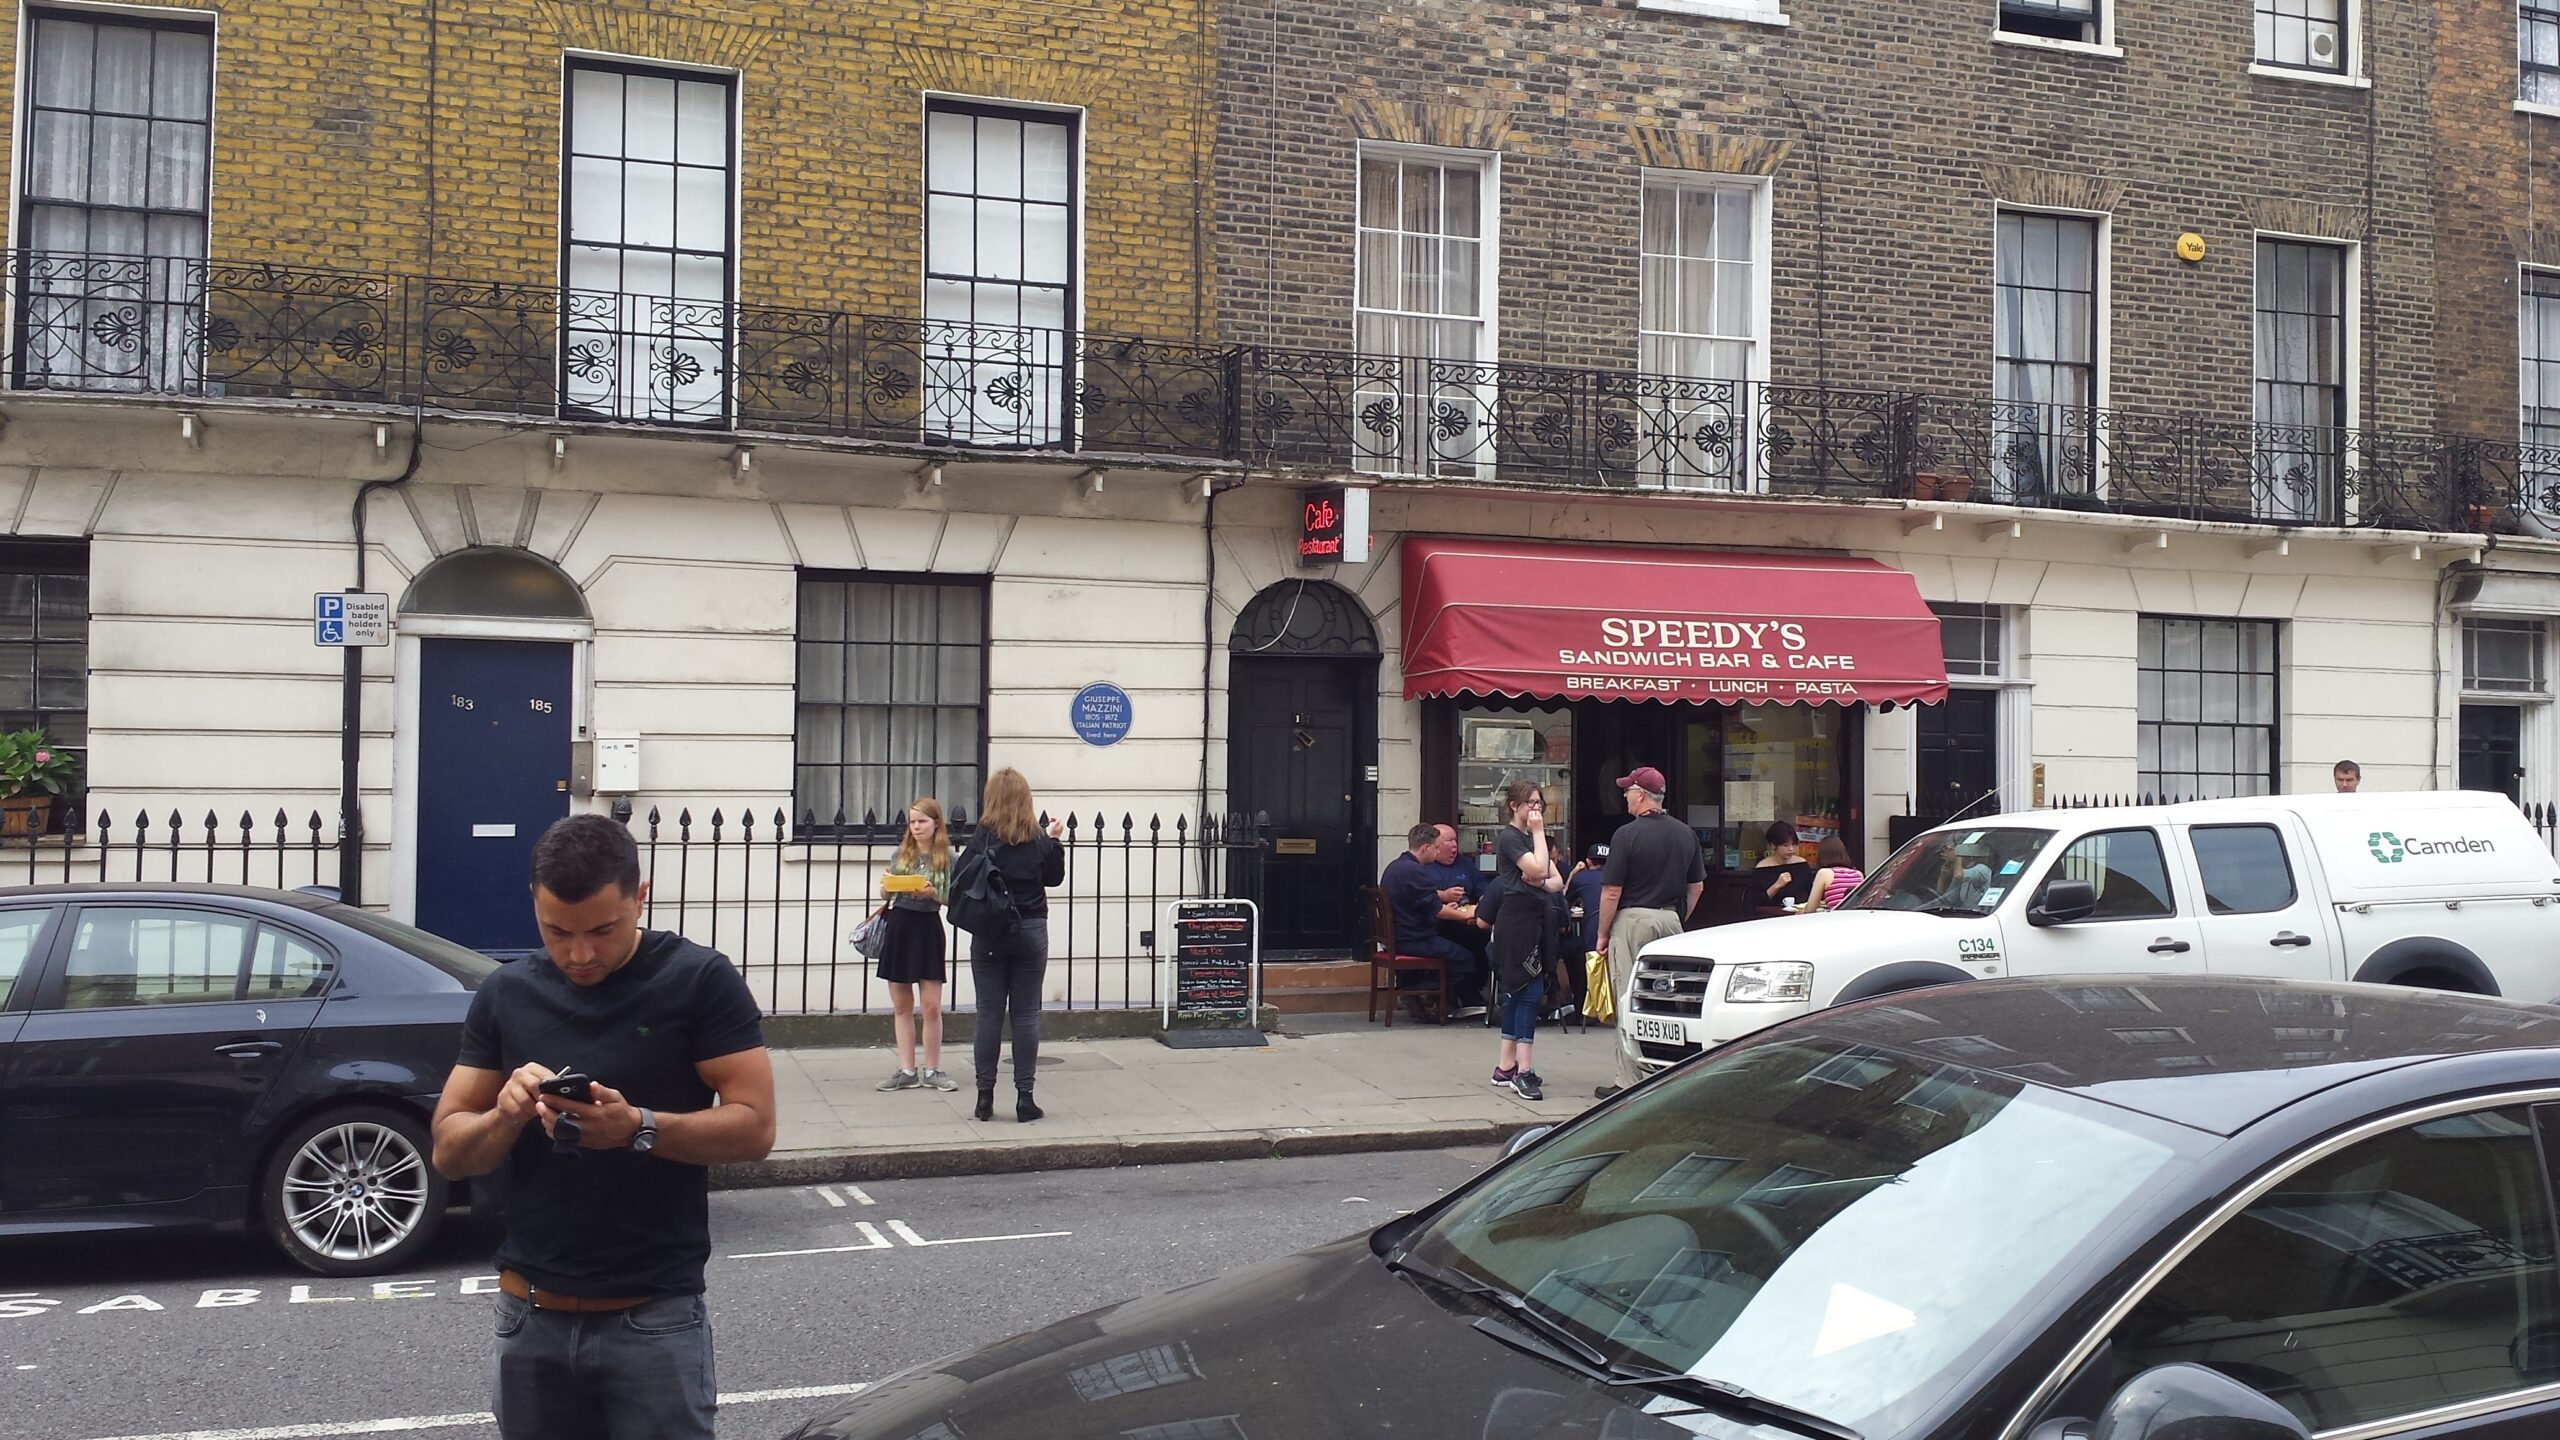 BBC Sherlock Is It Filmed In Baker Street?